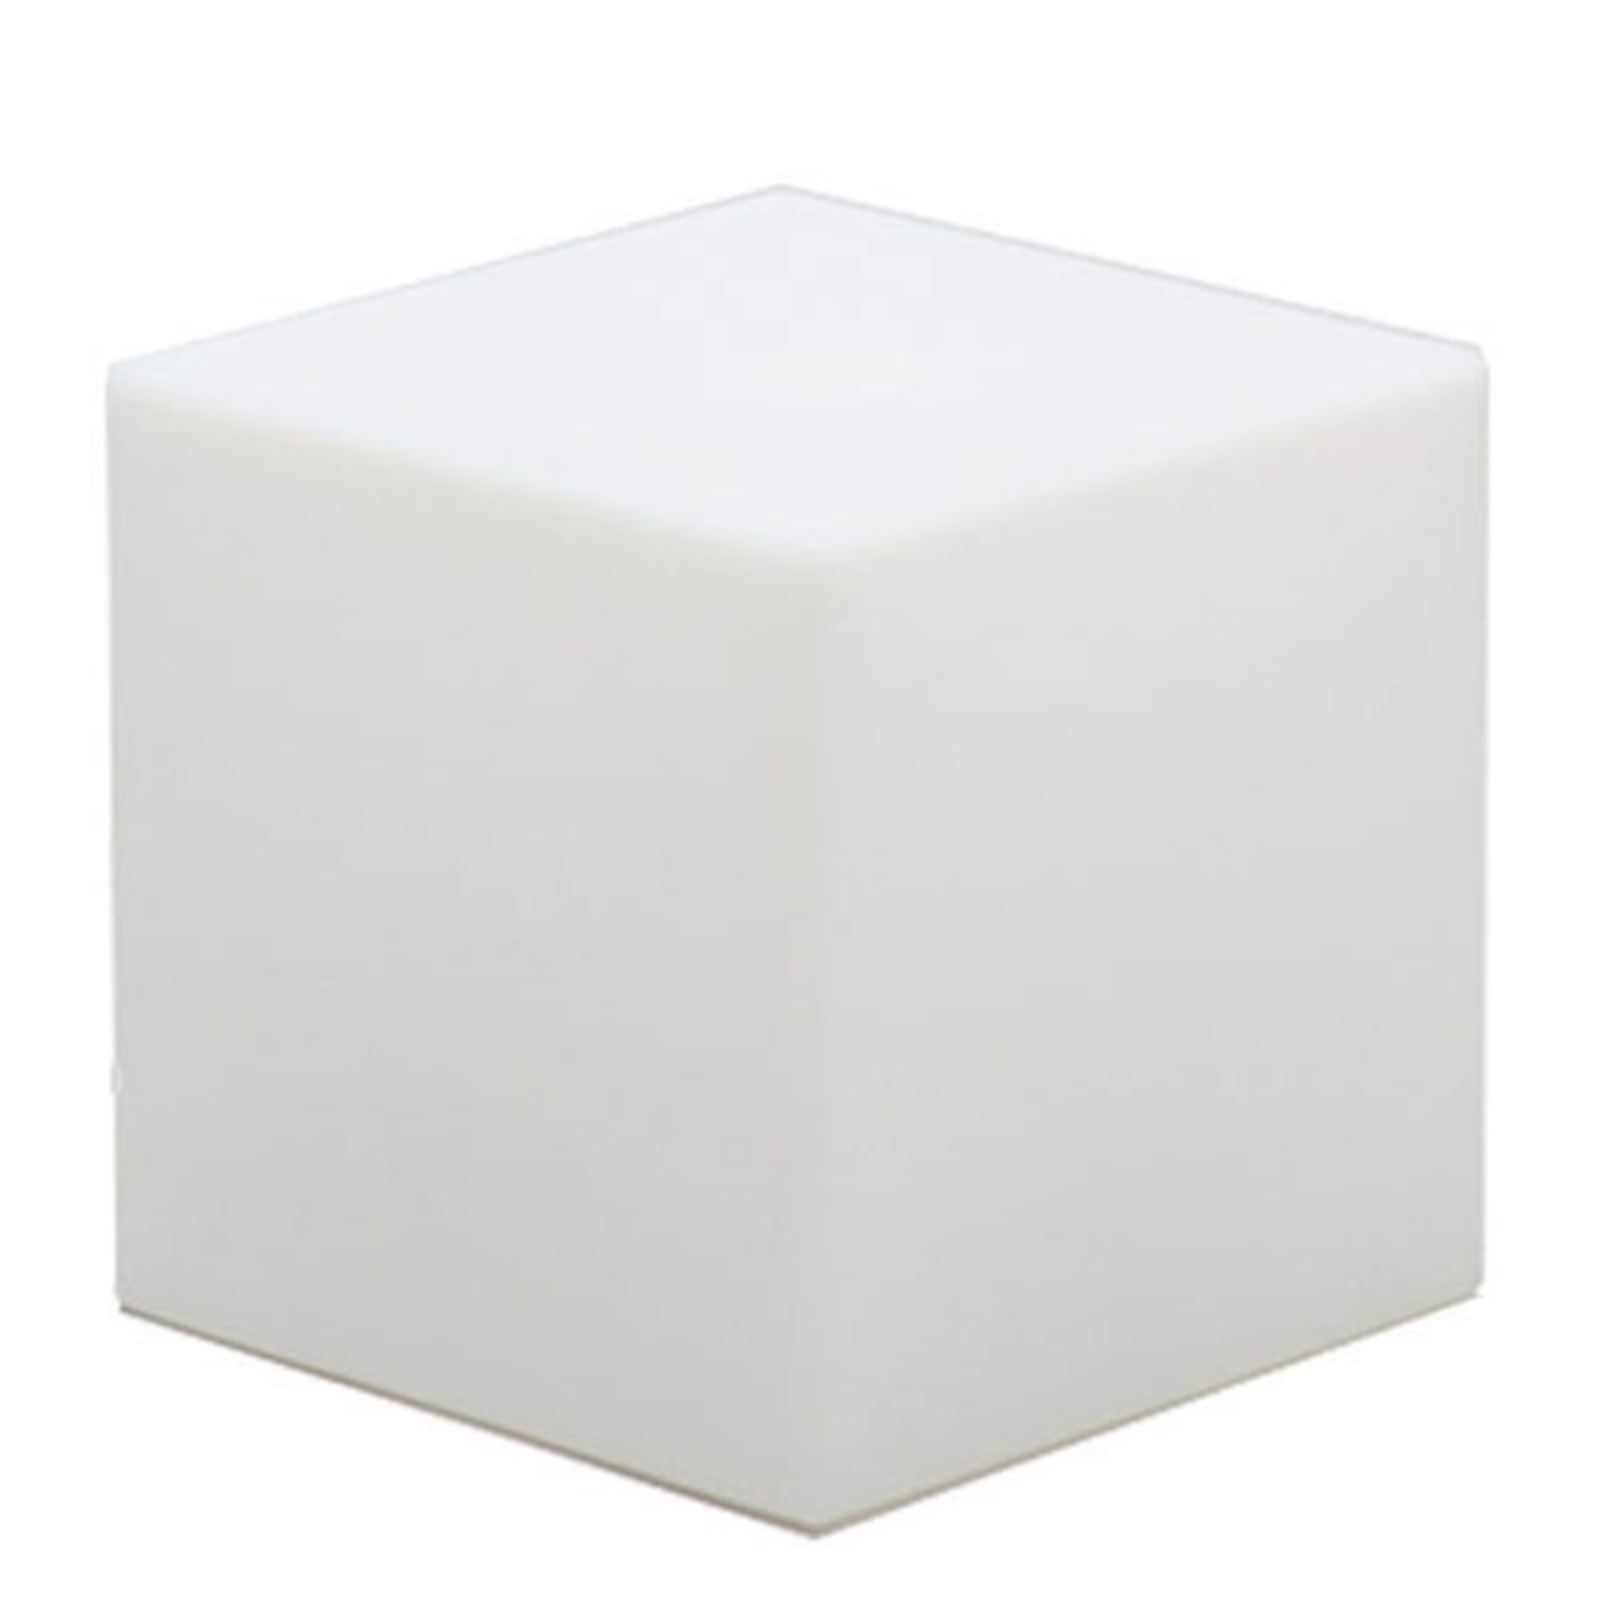 Newgarden solcellelampe Cuby cube, høyde 32 cm